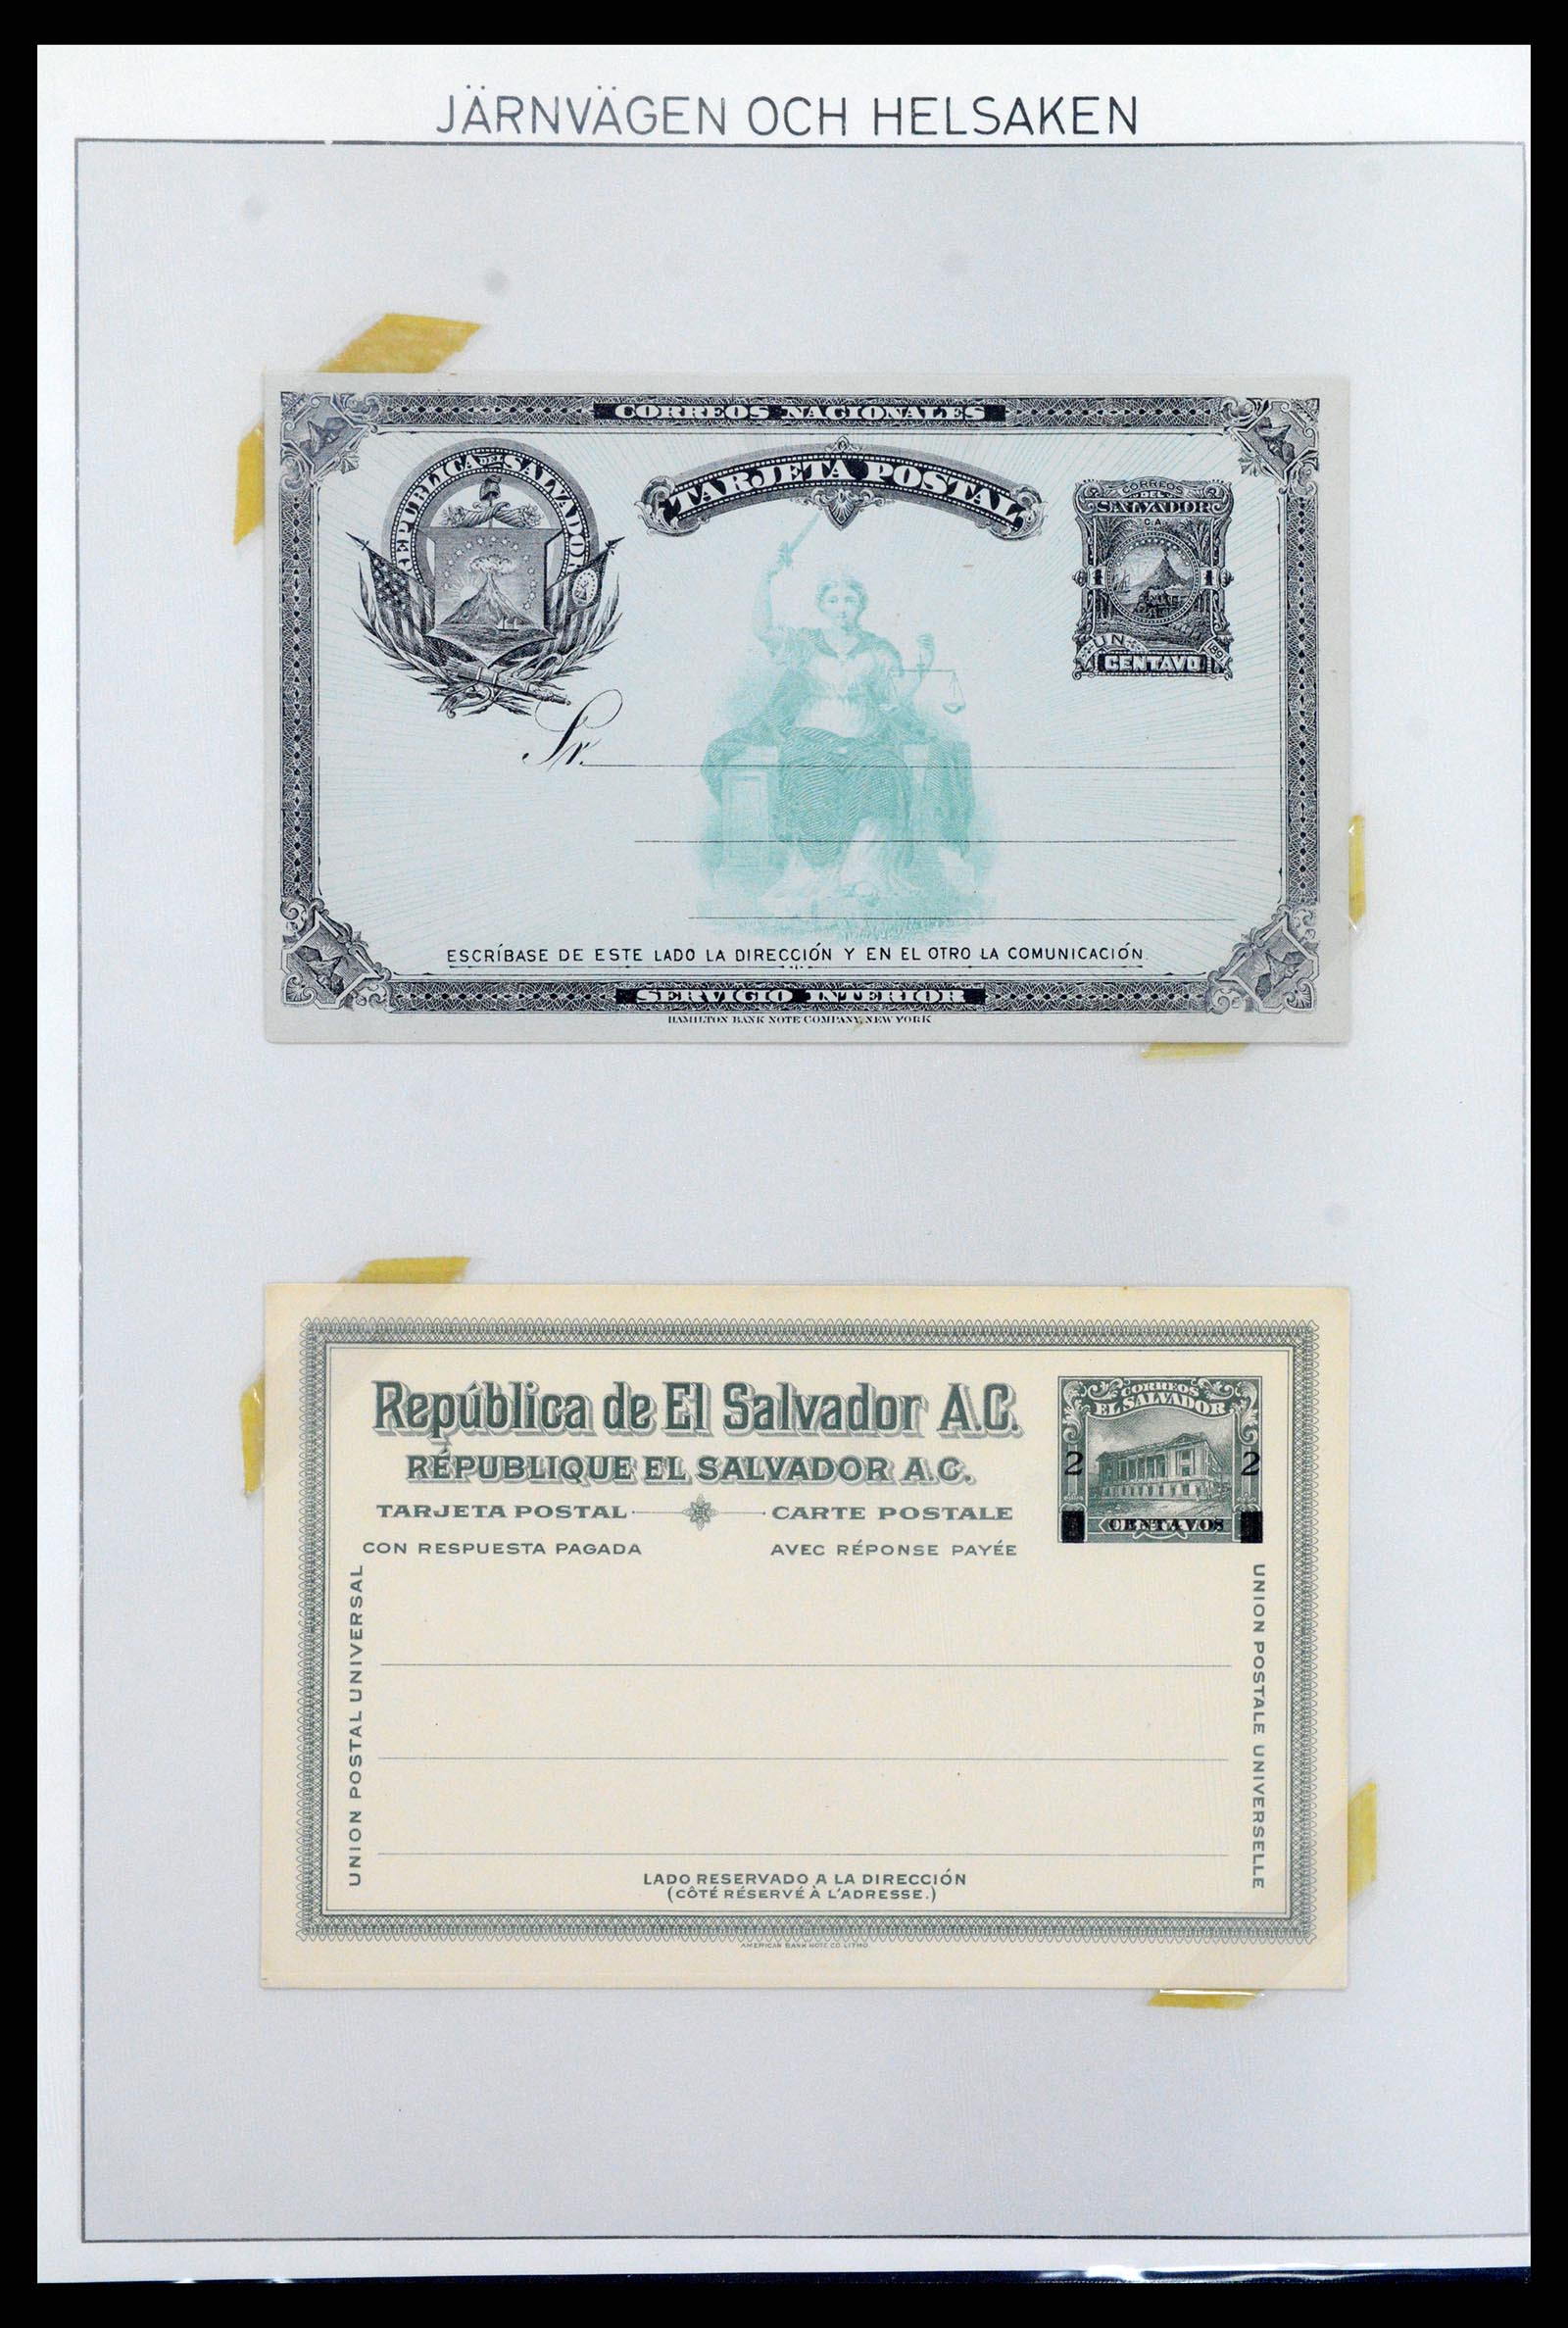 37412 027 - Stamp collection 37412 El Salvador trains 1891-1930.